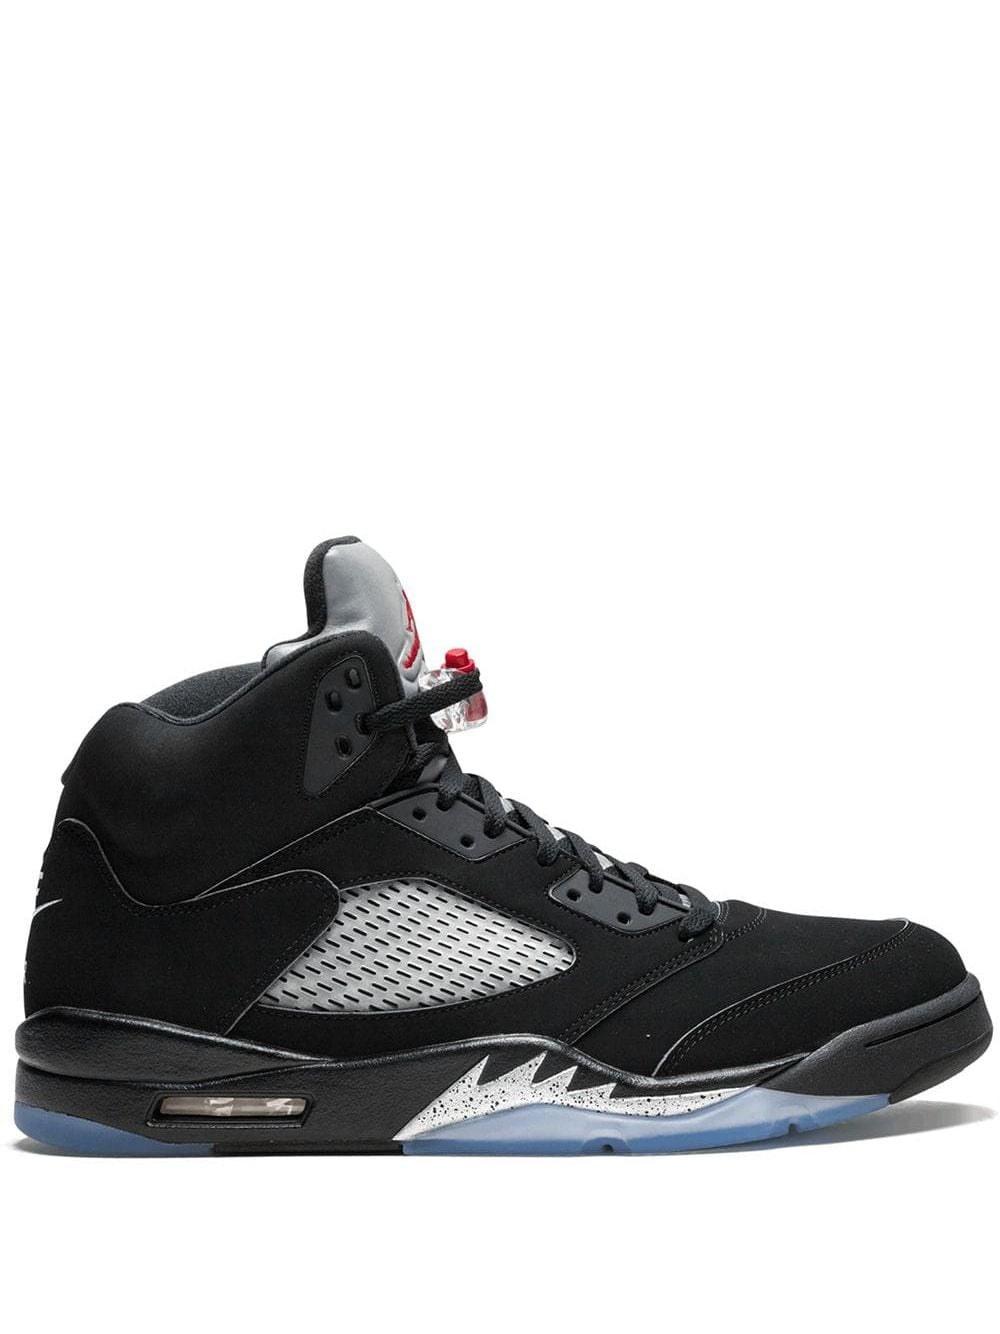 Jordan Air Jordan 5 Retro OG "Black / Metallic" sneakers